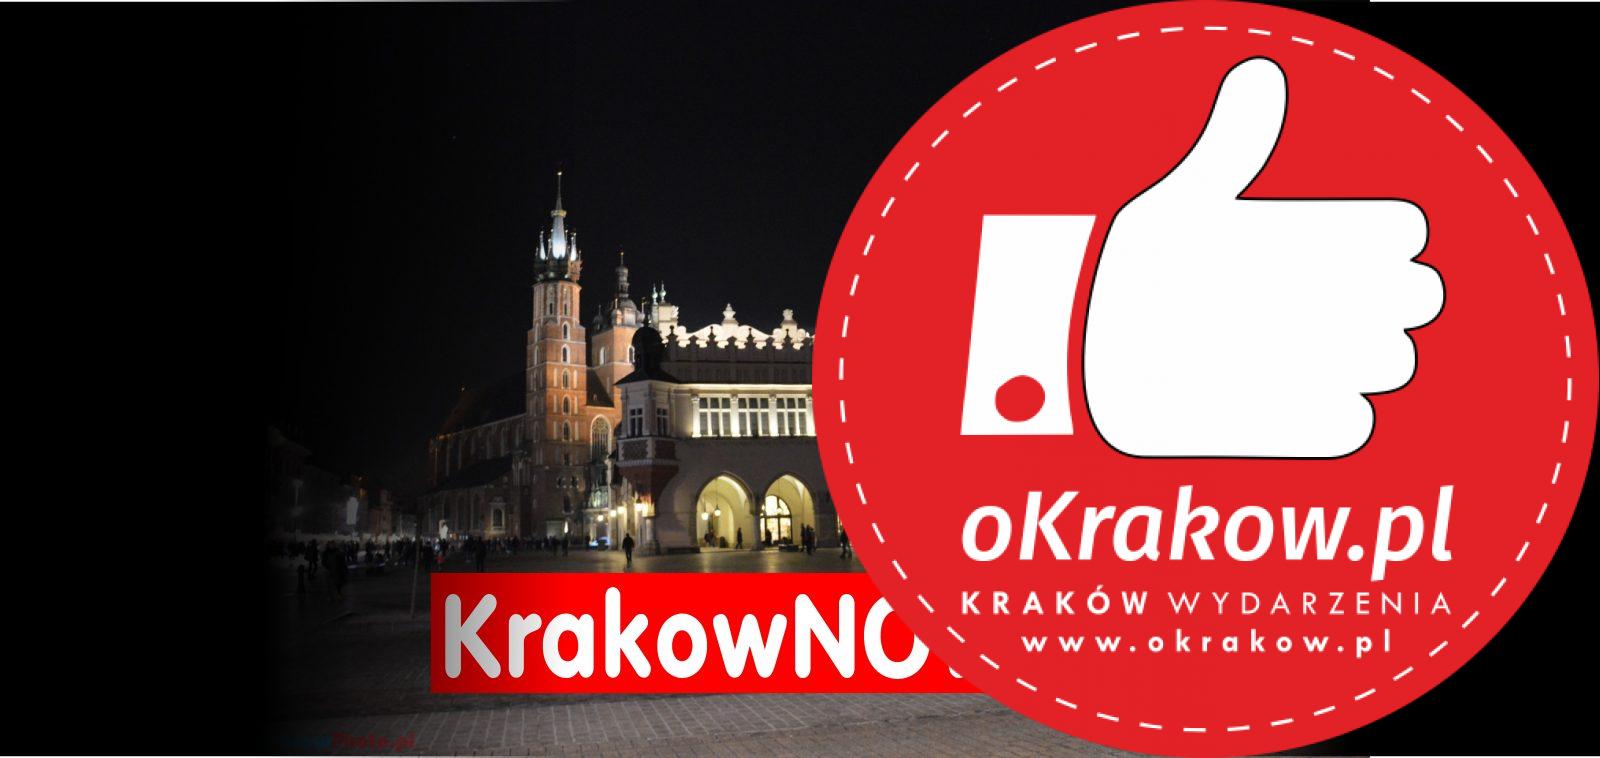 krakow fb 1 - Dołącz do grupy na Facebooku